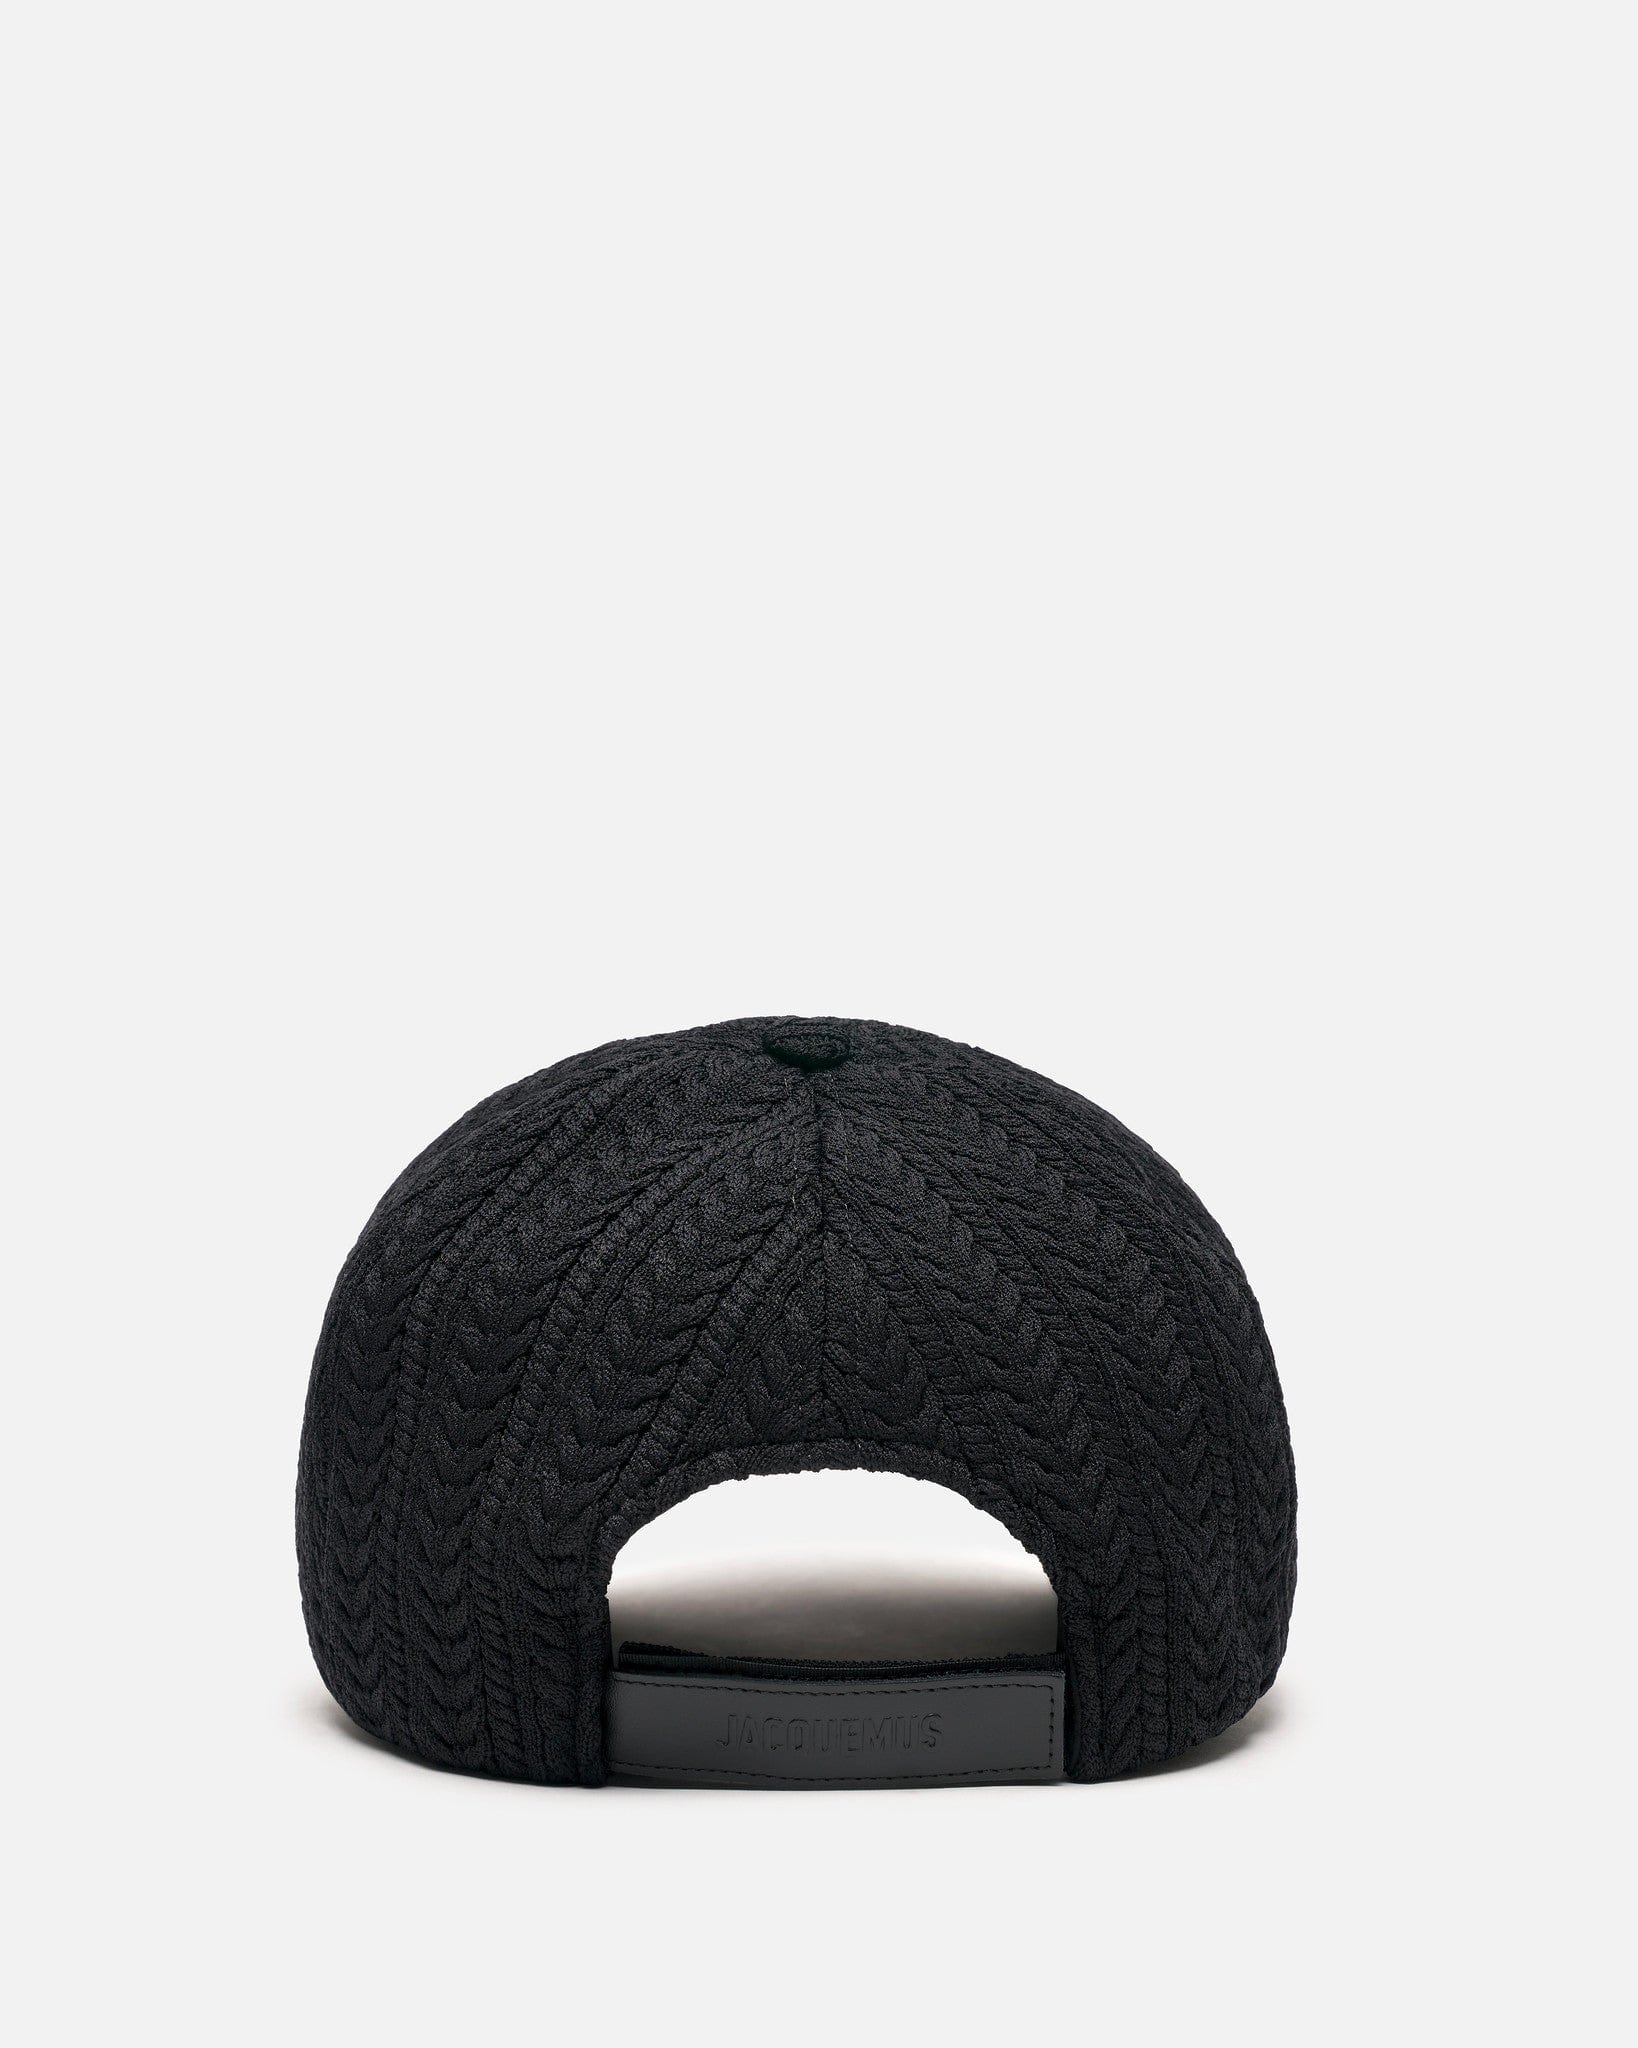 Jacquemus Men's Hats La Casquette Belo in Black